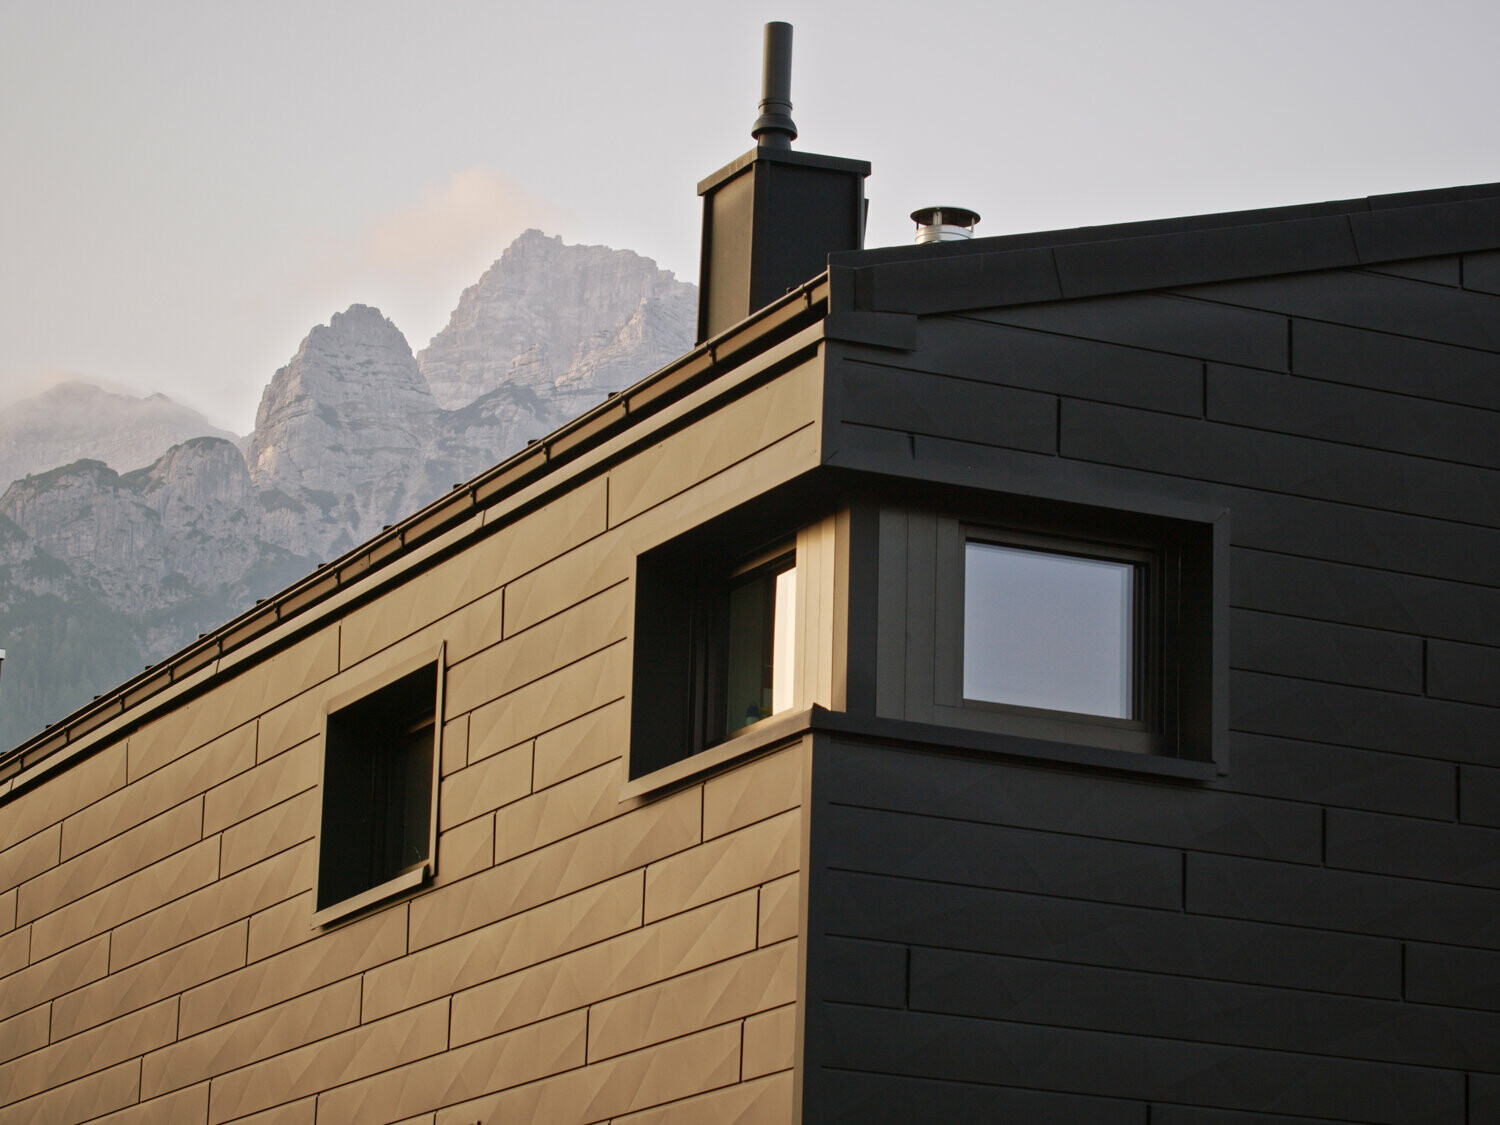 Neugebautes Einfamilienhaus mit schwarzer Siding.X Fassade, im Hintergrund sind die Tiroler Berge zu sehen